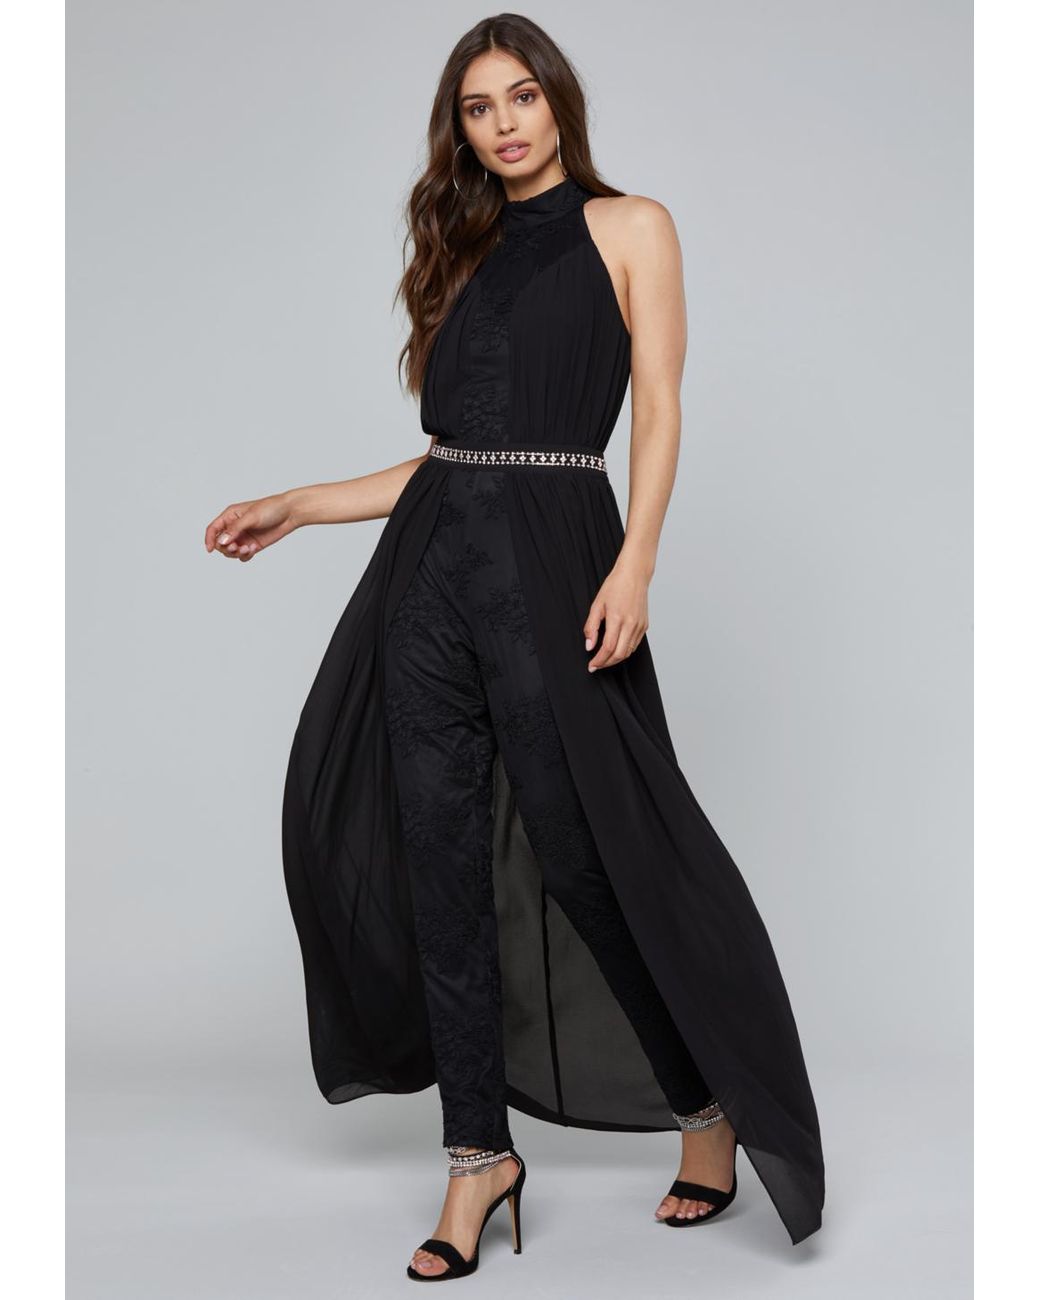 Bebe Skirt Overlay Jumpsuit in Black | Lyst UK